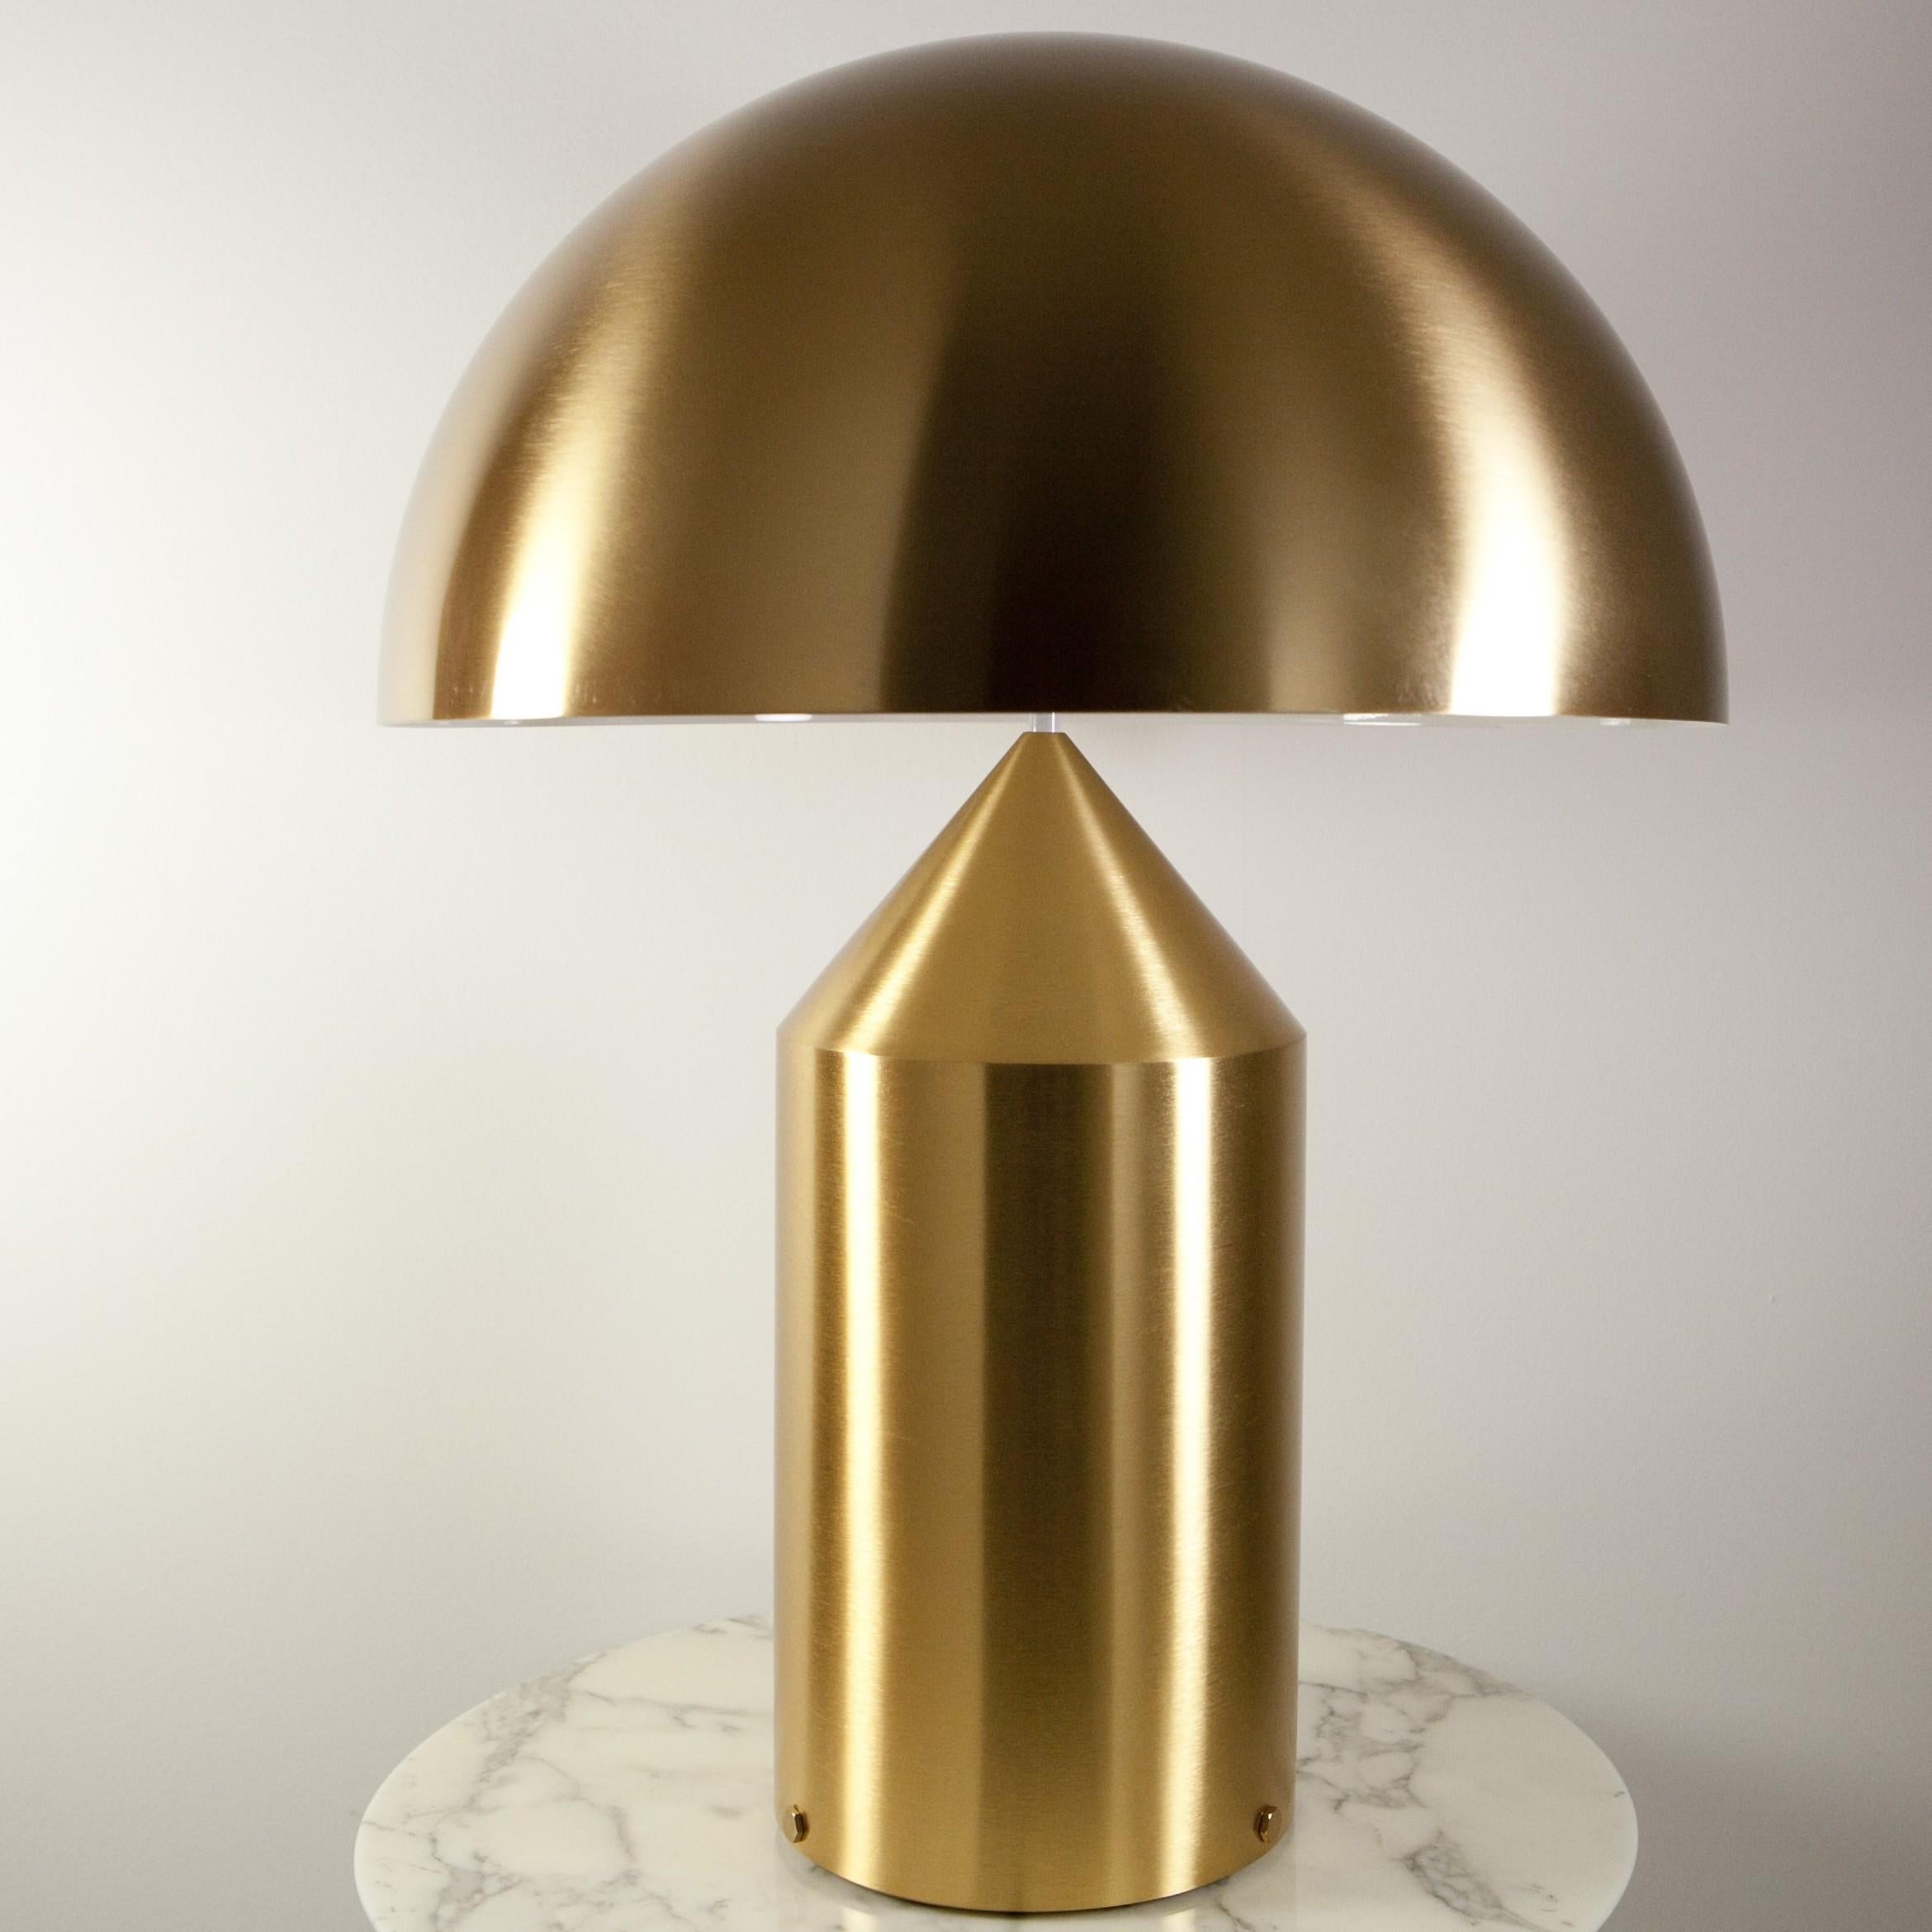 Lampe de table en métal Atollo de Vico Magistretti pour Oluce. La lampe Atollo est devenue une représentation emblématique de la lampe de table. Le cylindre, le cône et l'hémisphère se combinent de manière si simple mais si forte que la forme suit